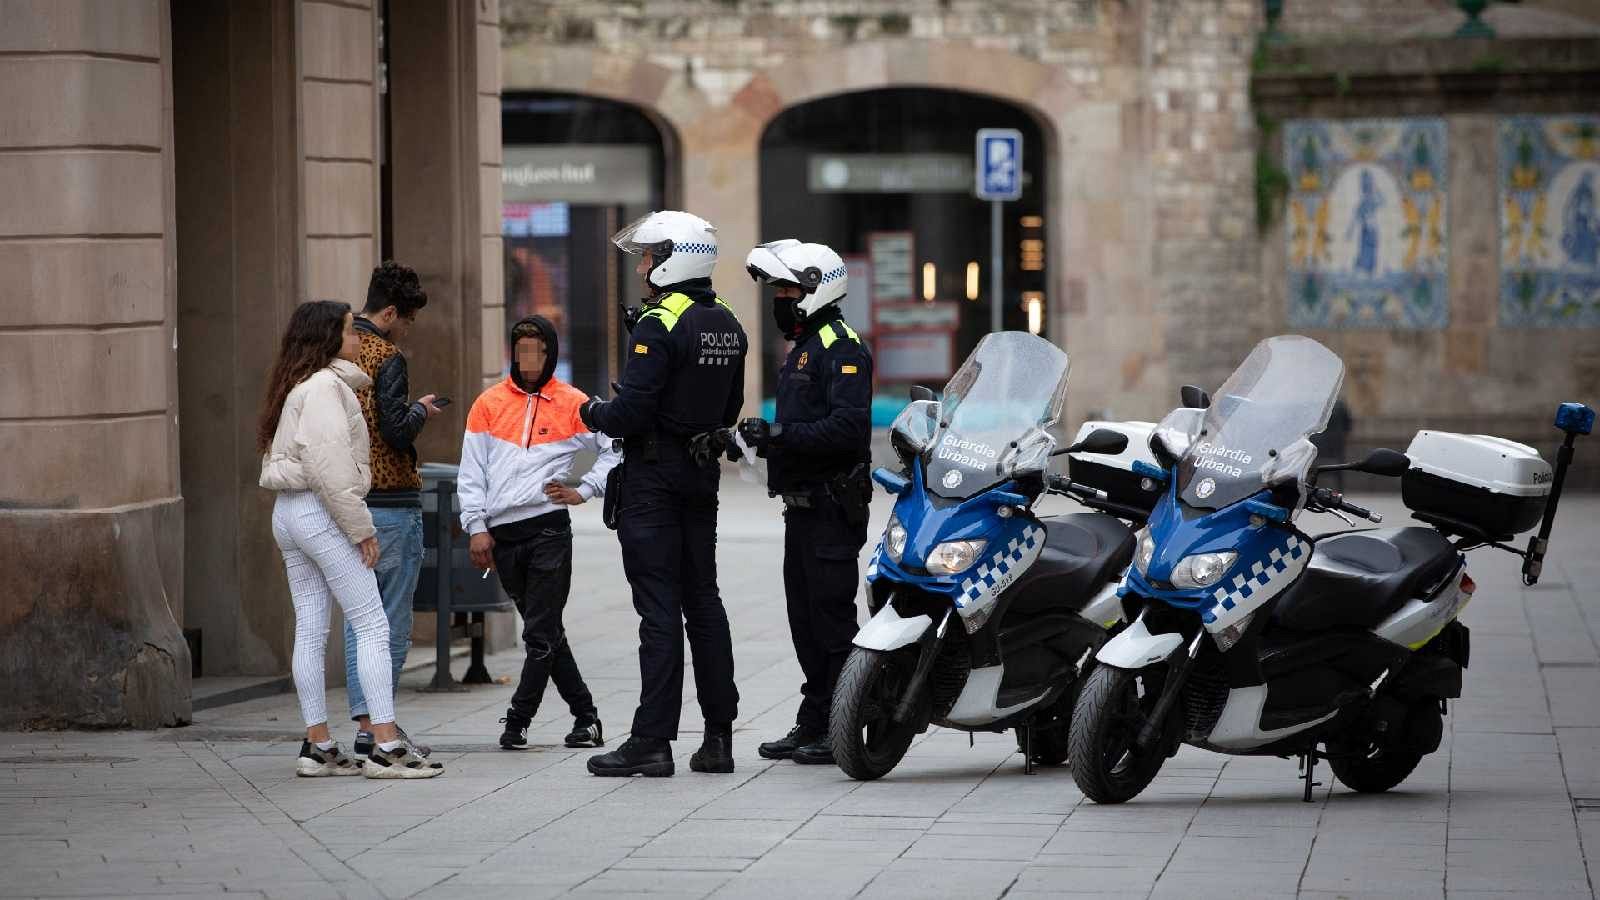 Els delictes disminueixen a Barcelona aquest estiu